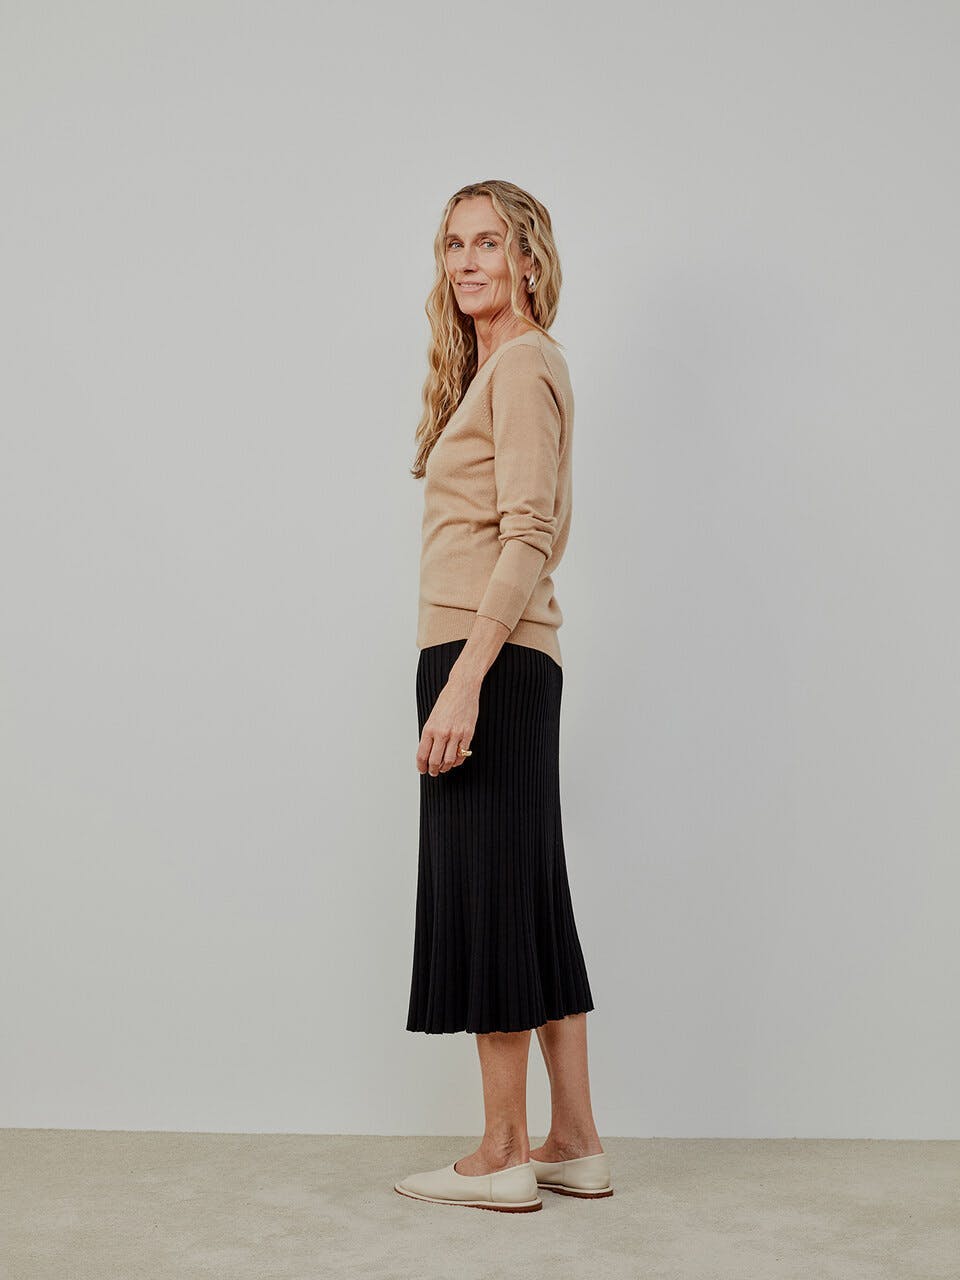 clothing skirt long sleeve sleeve dress person blouse coat miniskirt